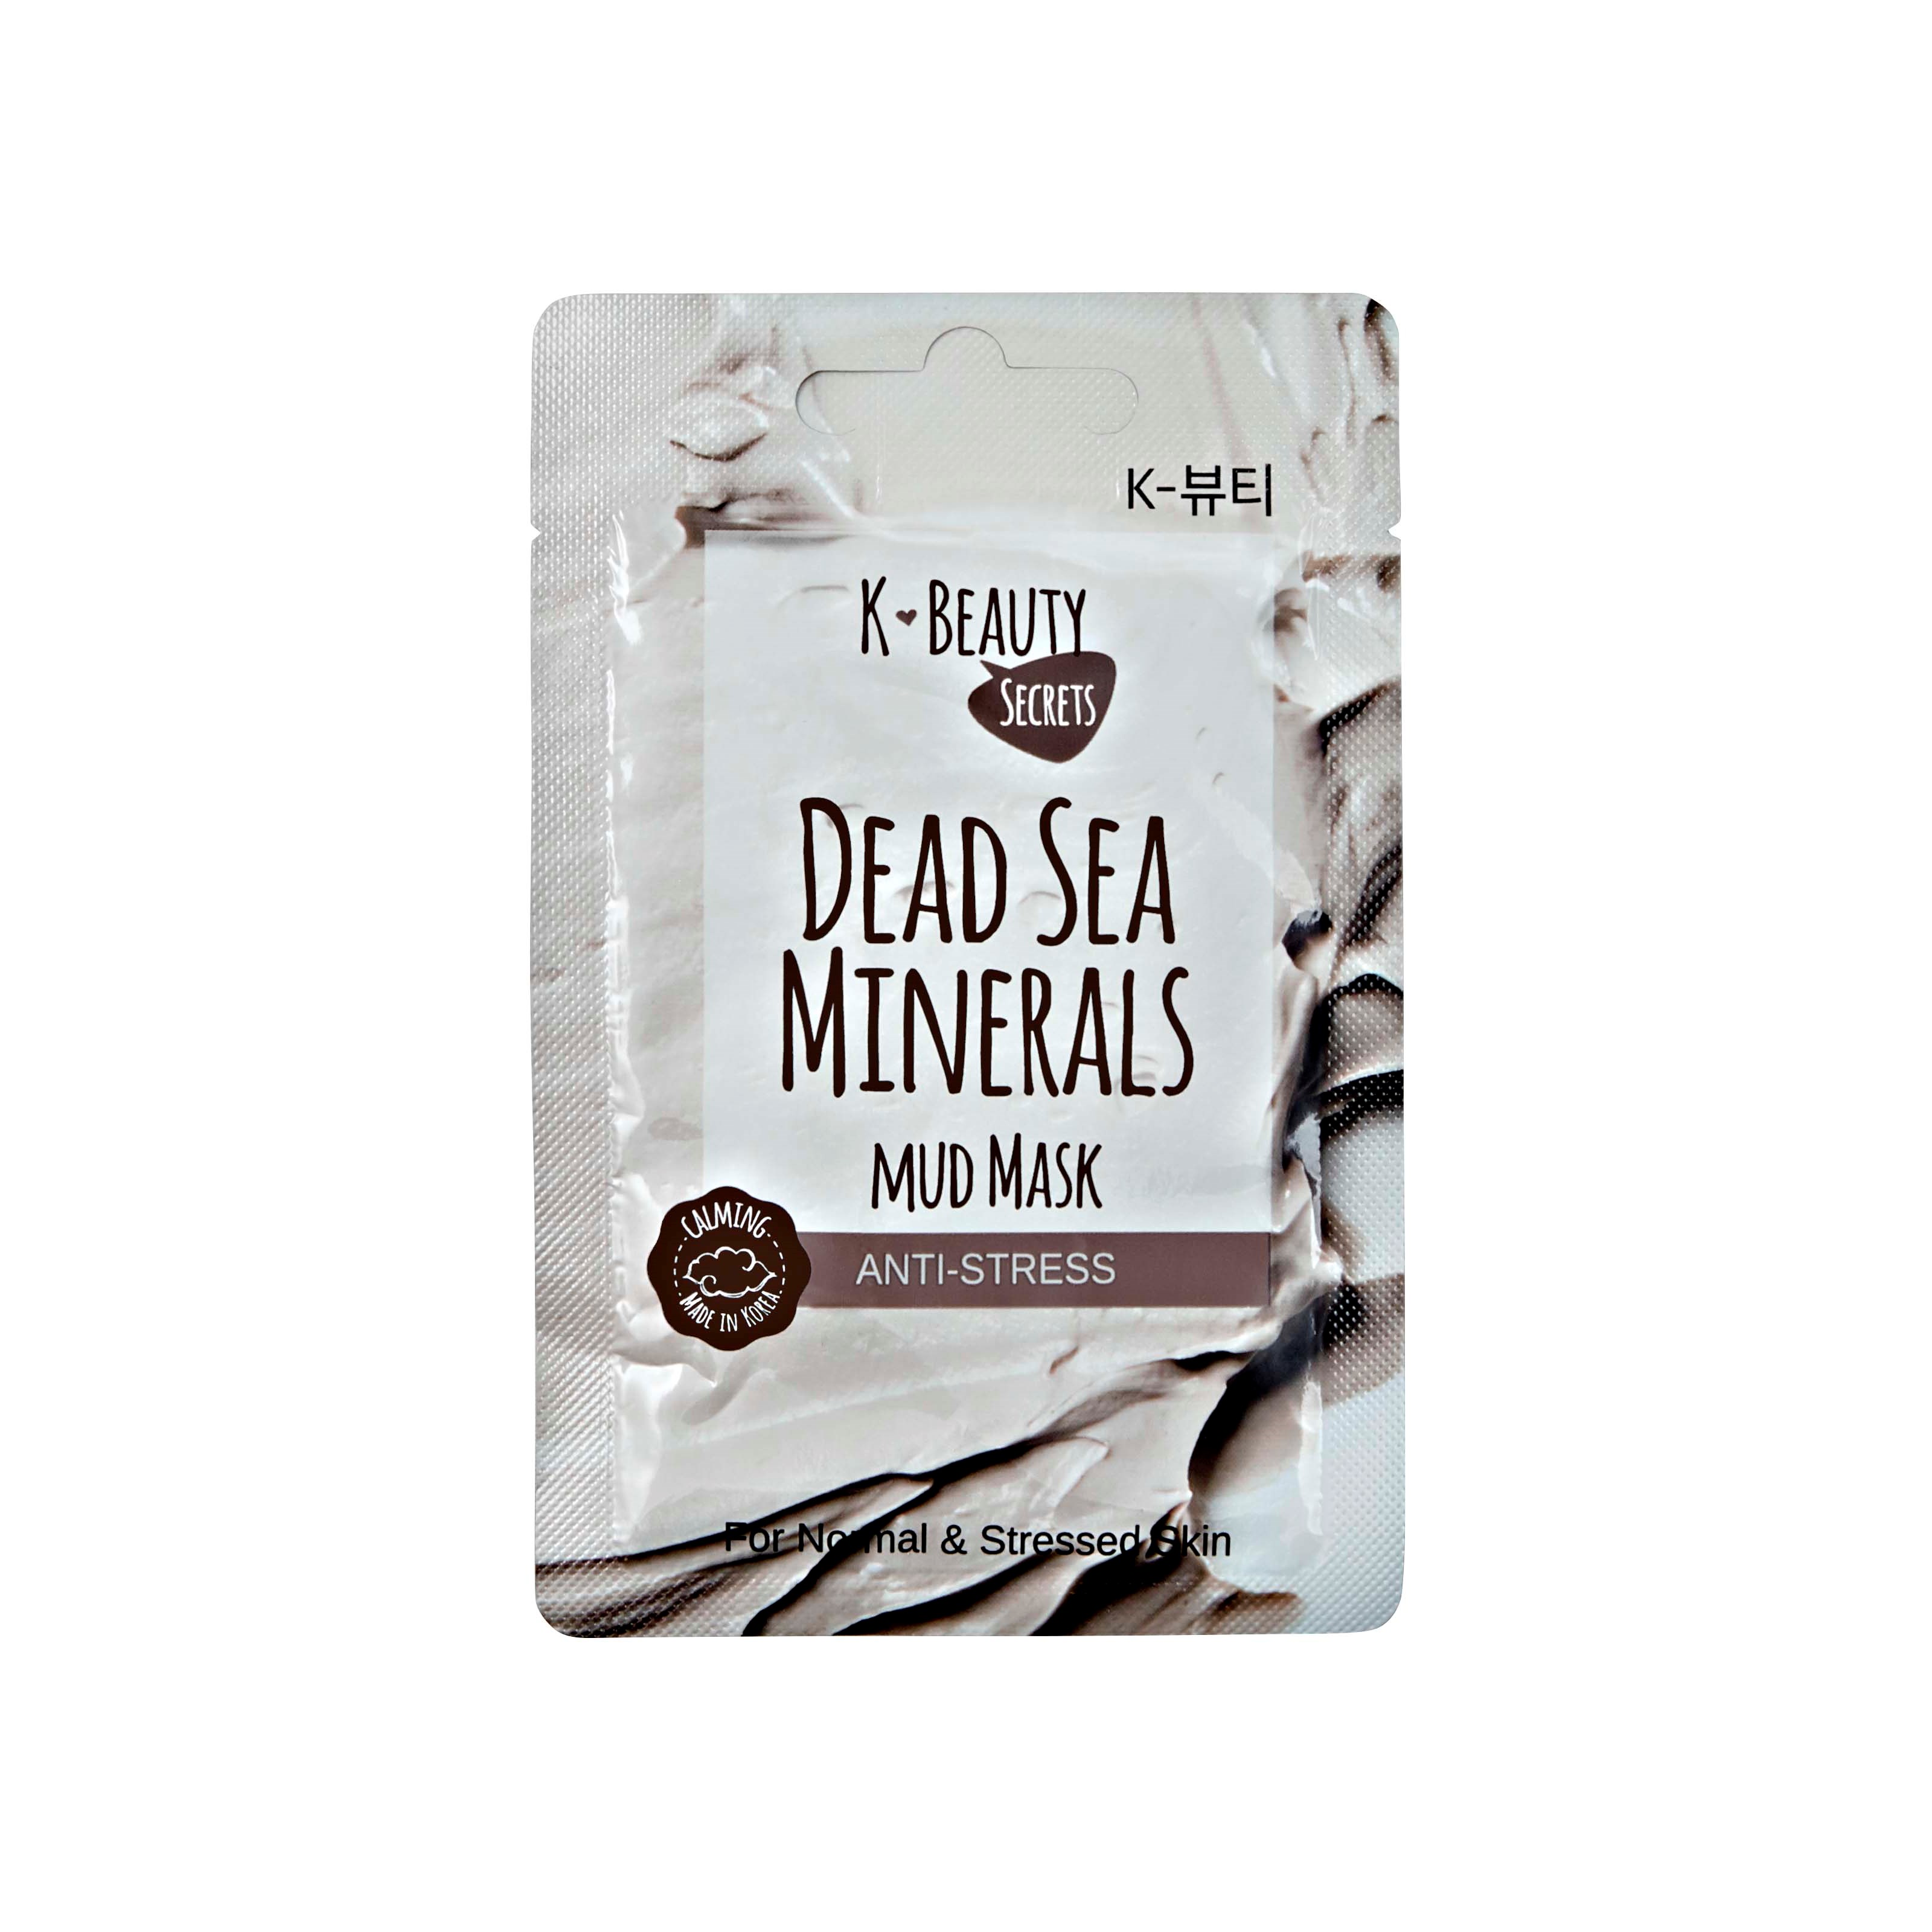 K- Beauty Secrets Dead Sea Minerals Anti Stress Mud Mask 15 g